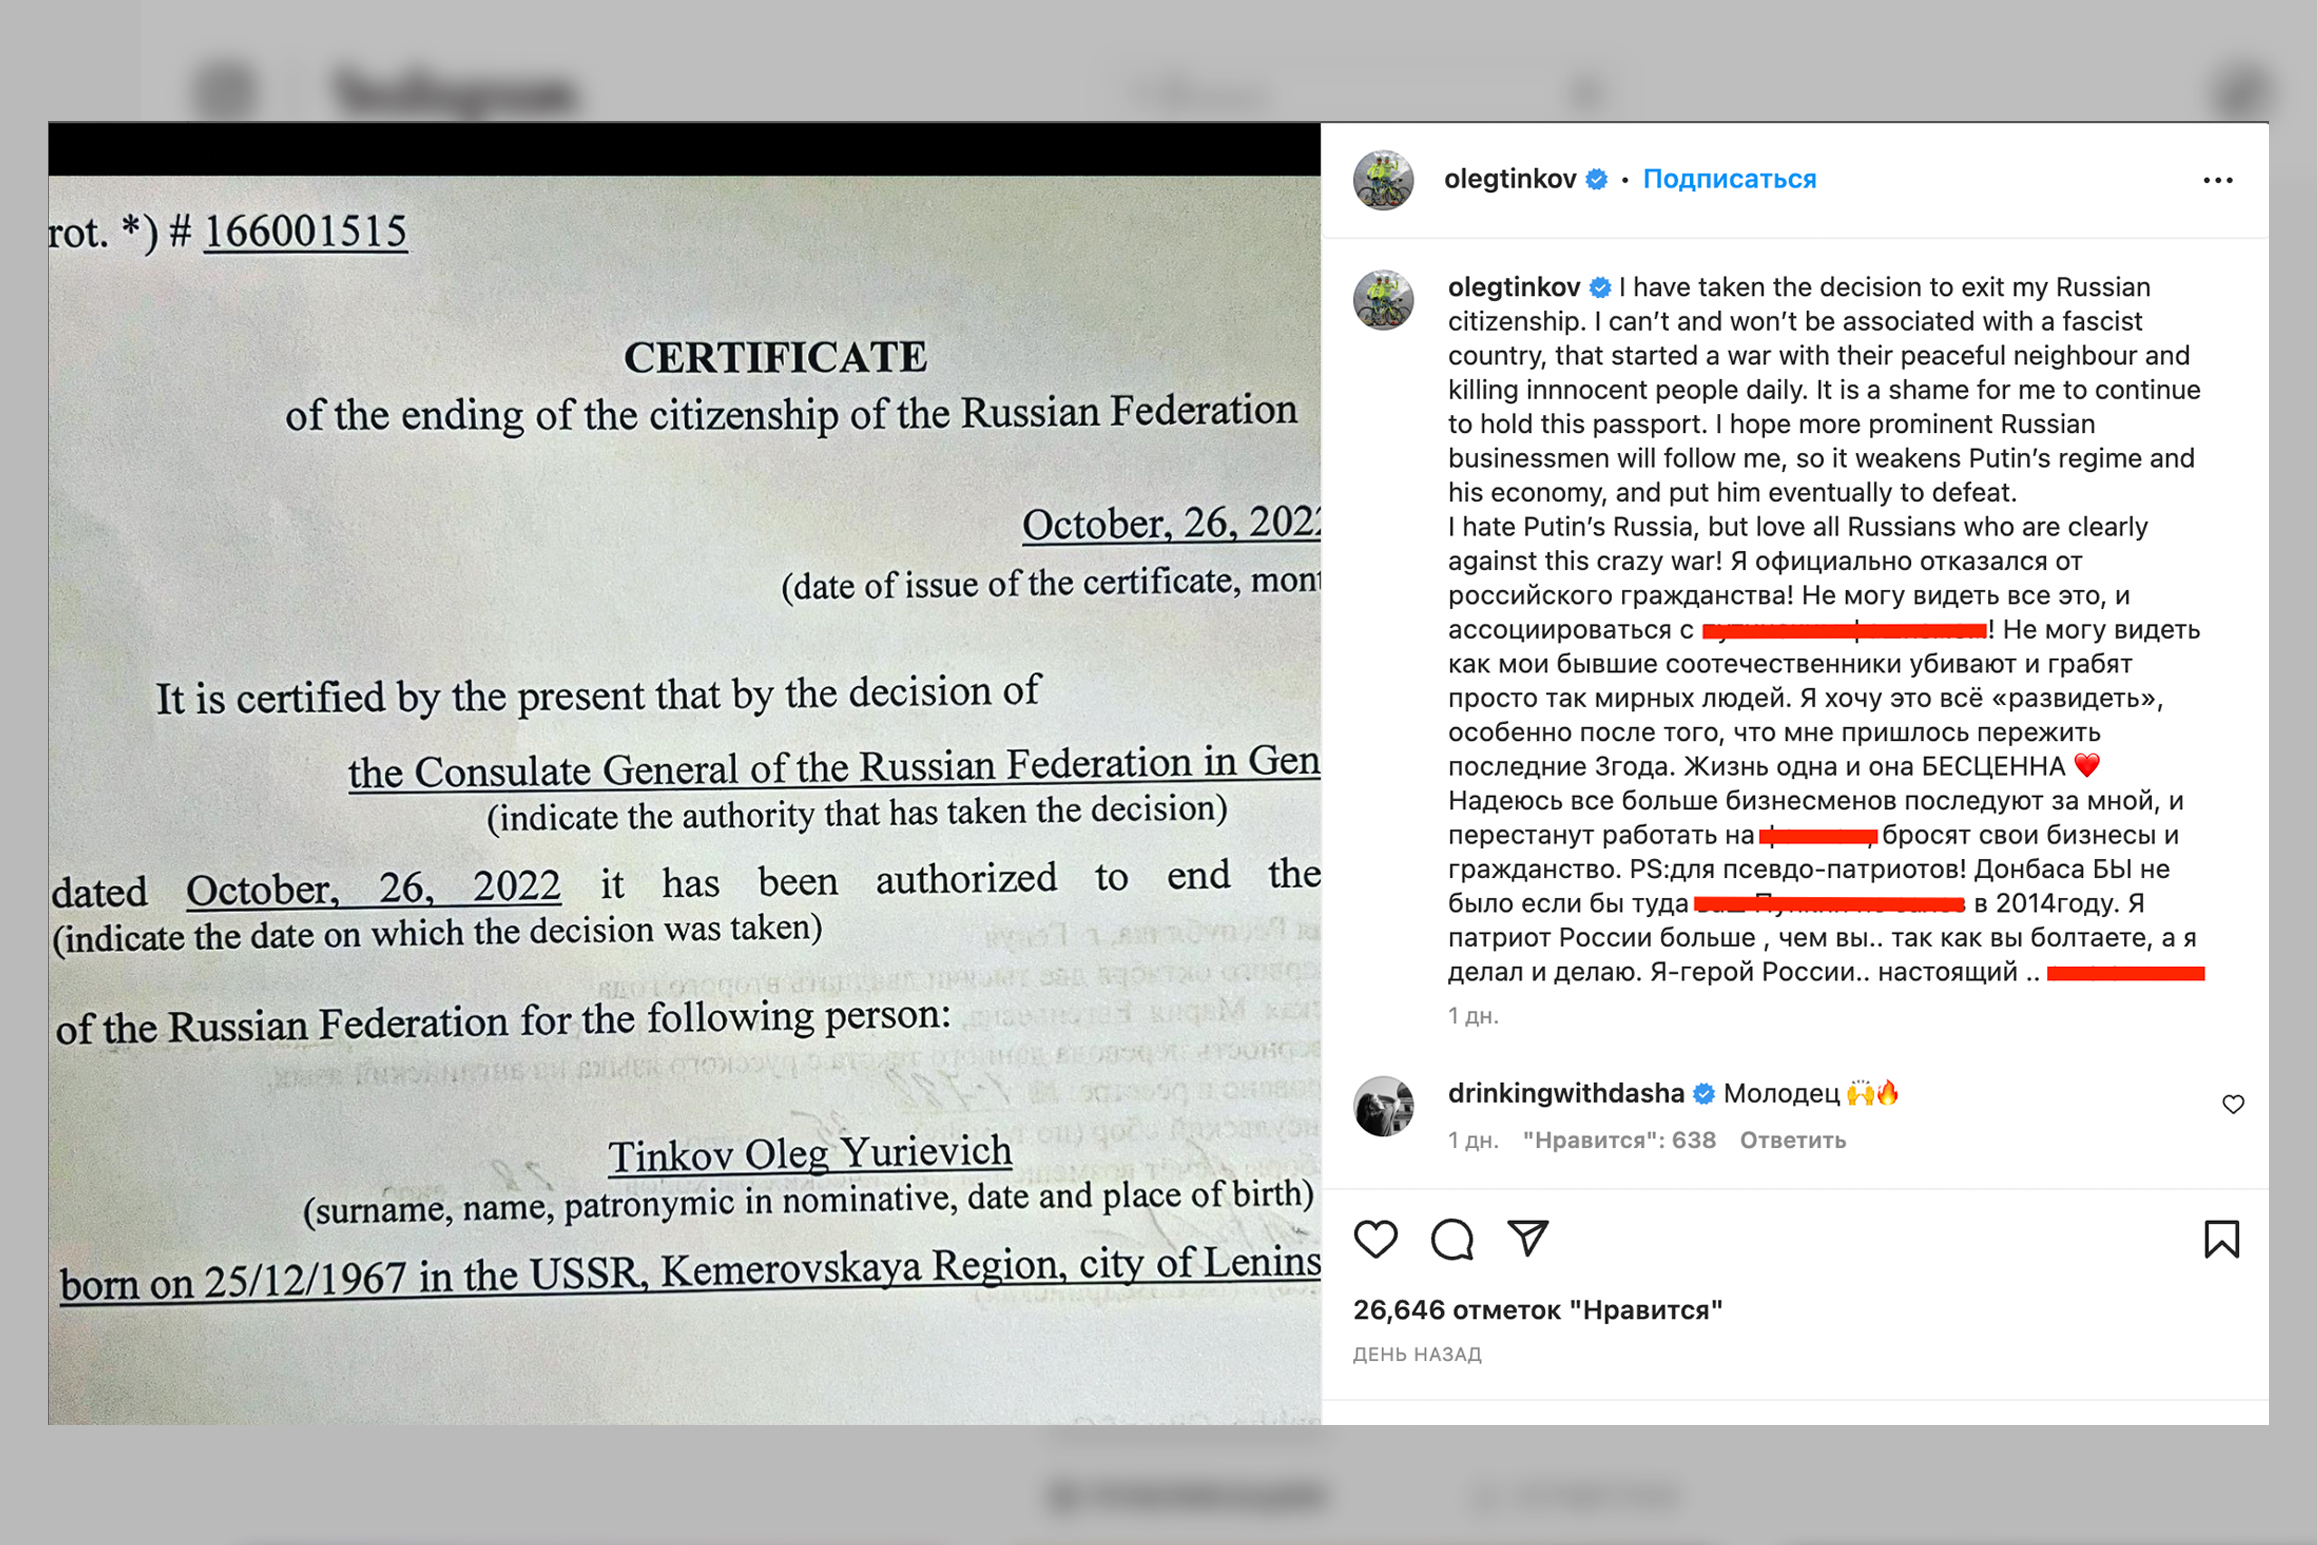 Скан документа о выходе из российского гражданства, опубликованный Олегом Тиньковым в своих соцсетях. Фото © Instagram (соцсеть запрещена на территории Российской Федерации) / olegtinkov